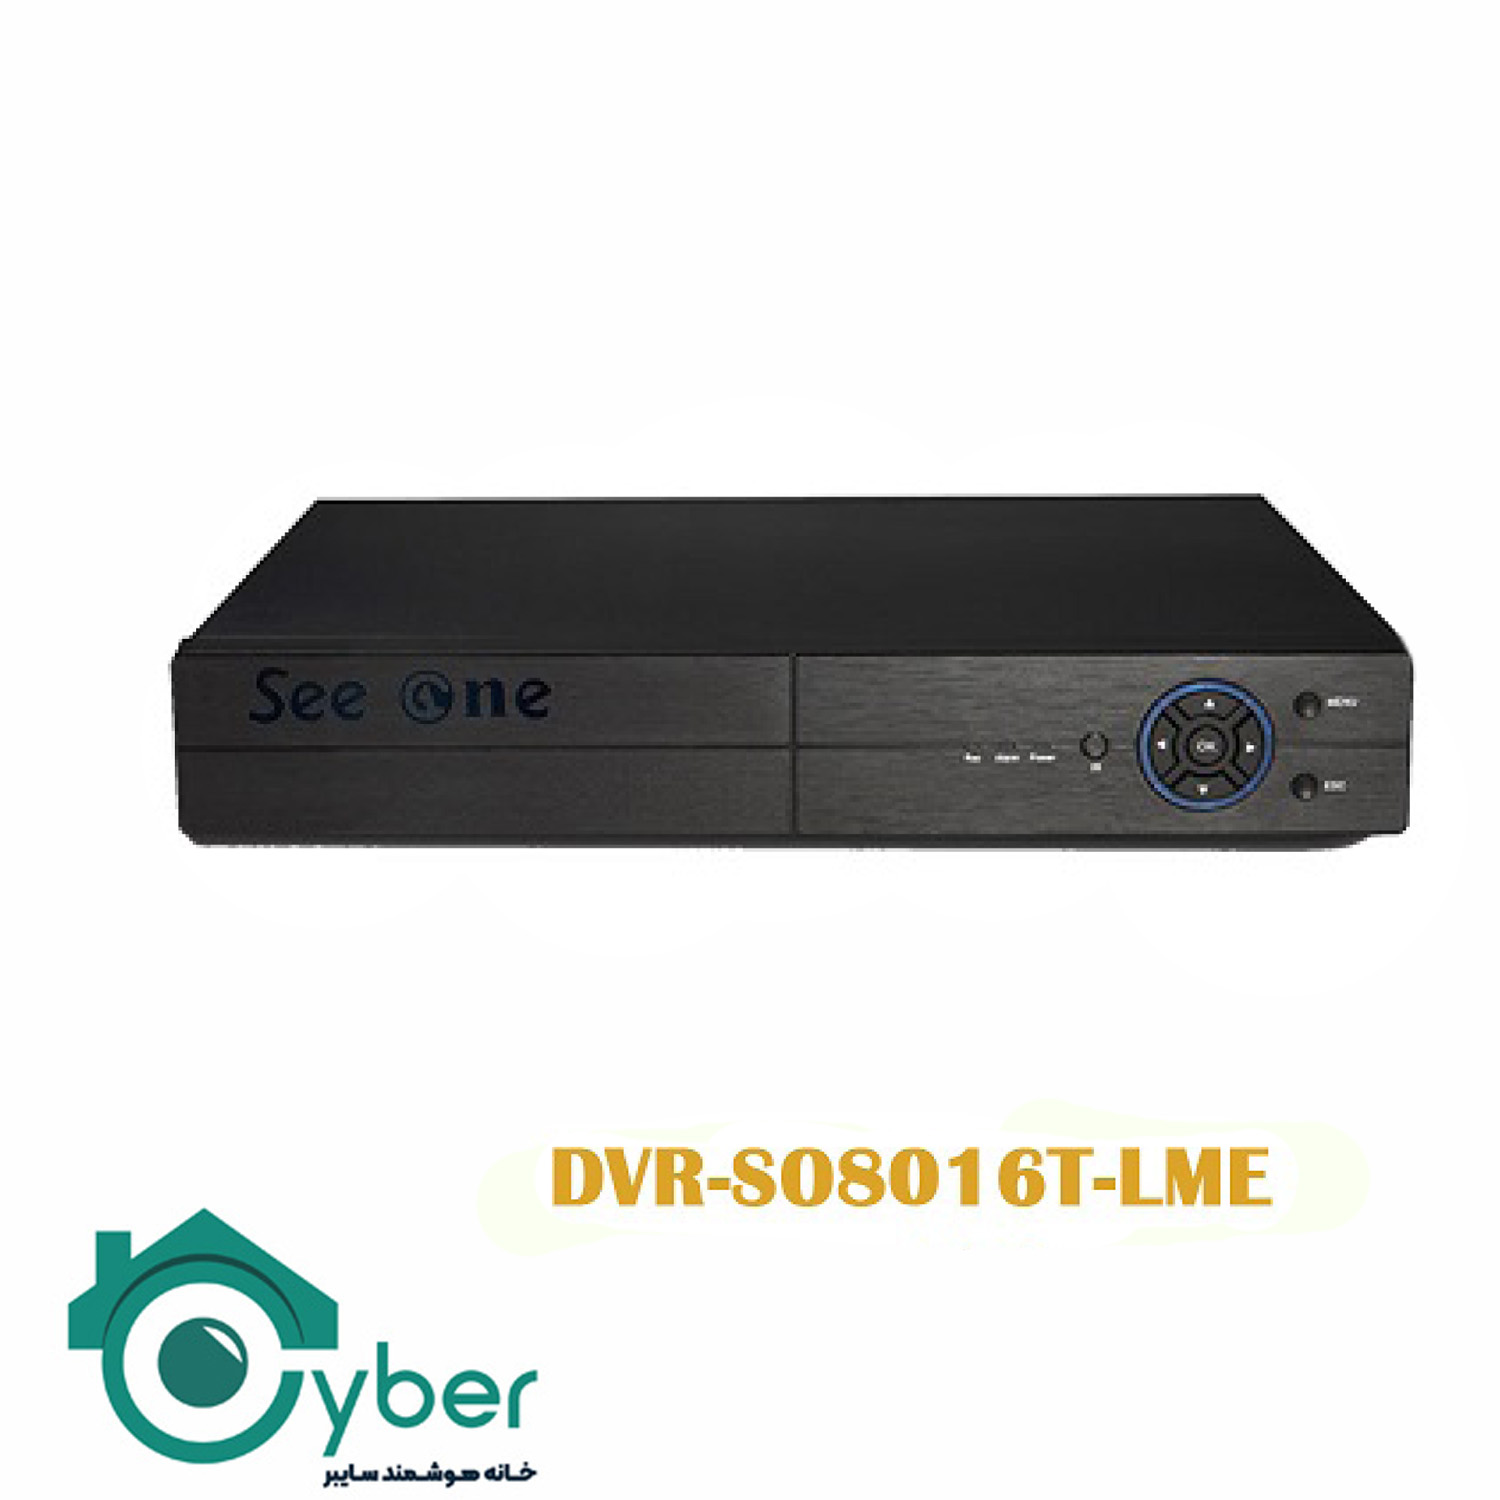 دستگاه ضبط تصاویر 16 کانال DVR-S08016T-LME مدل Seeone سیوان